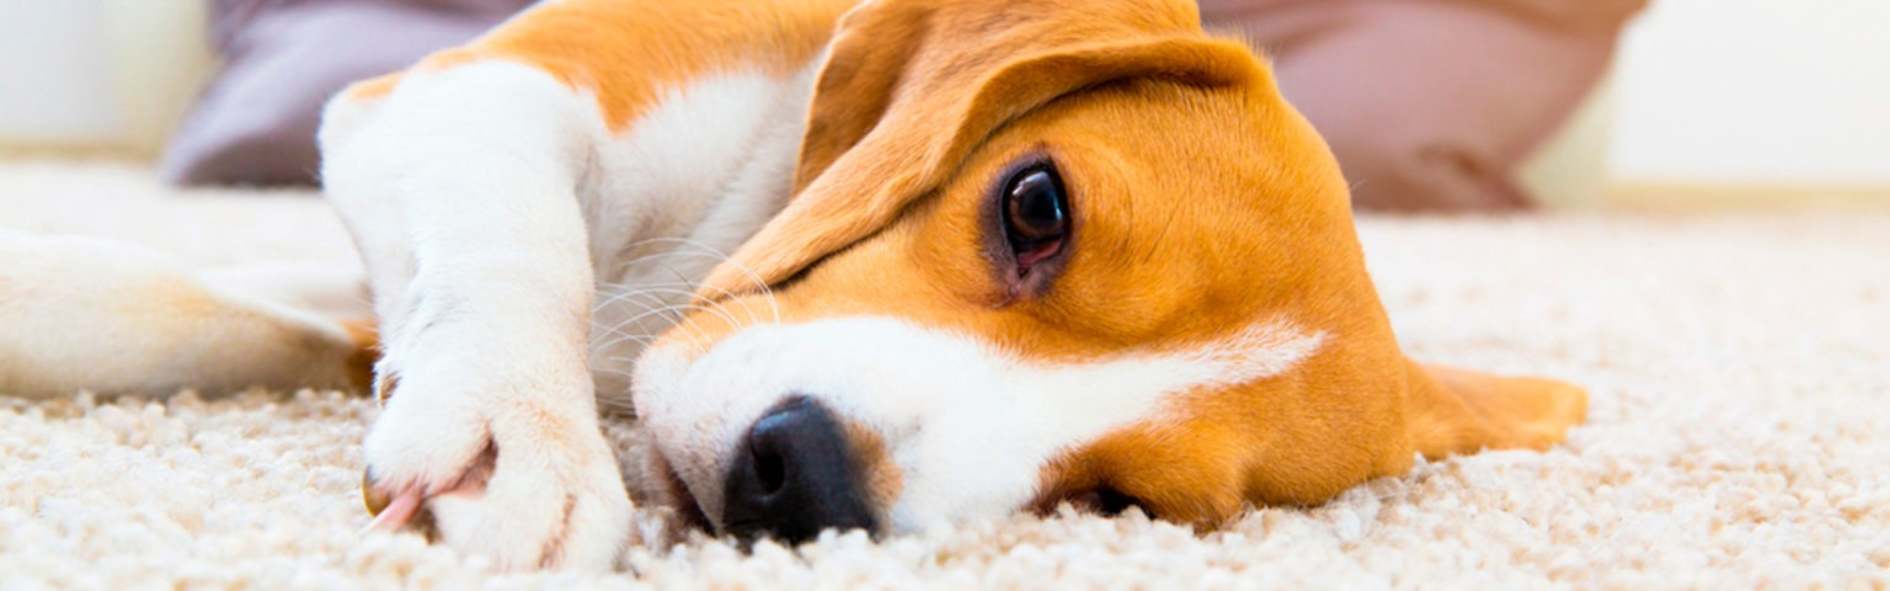 Conoce la leishmaniasis en perros y cómo prevenirla